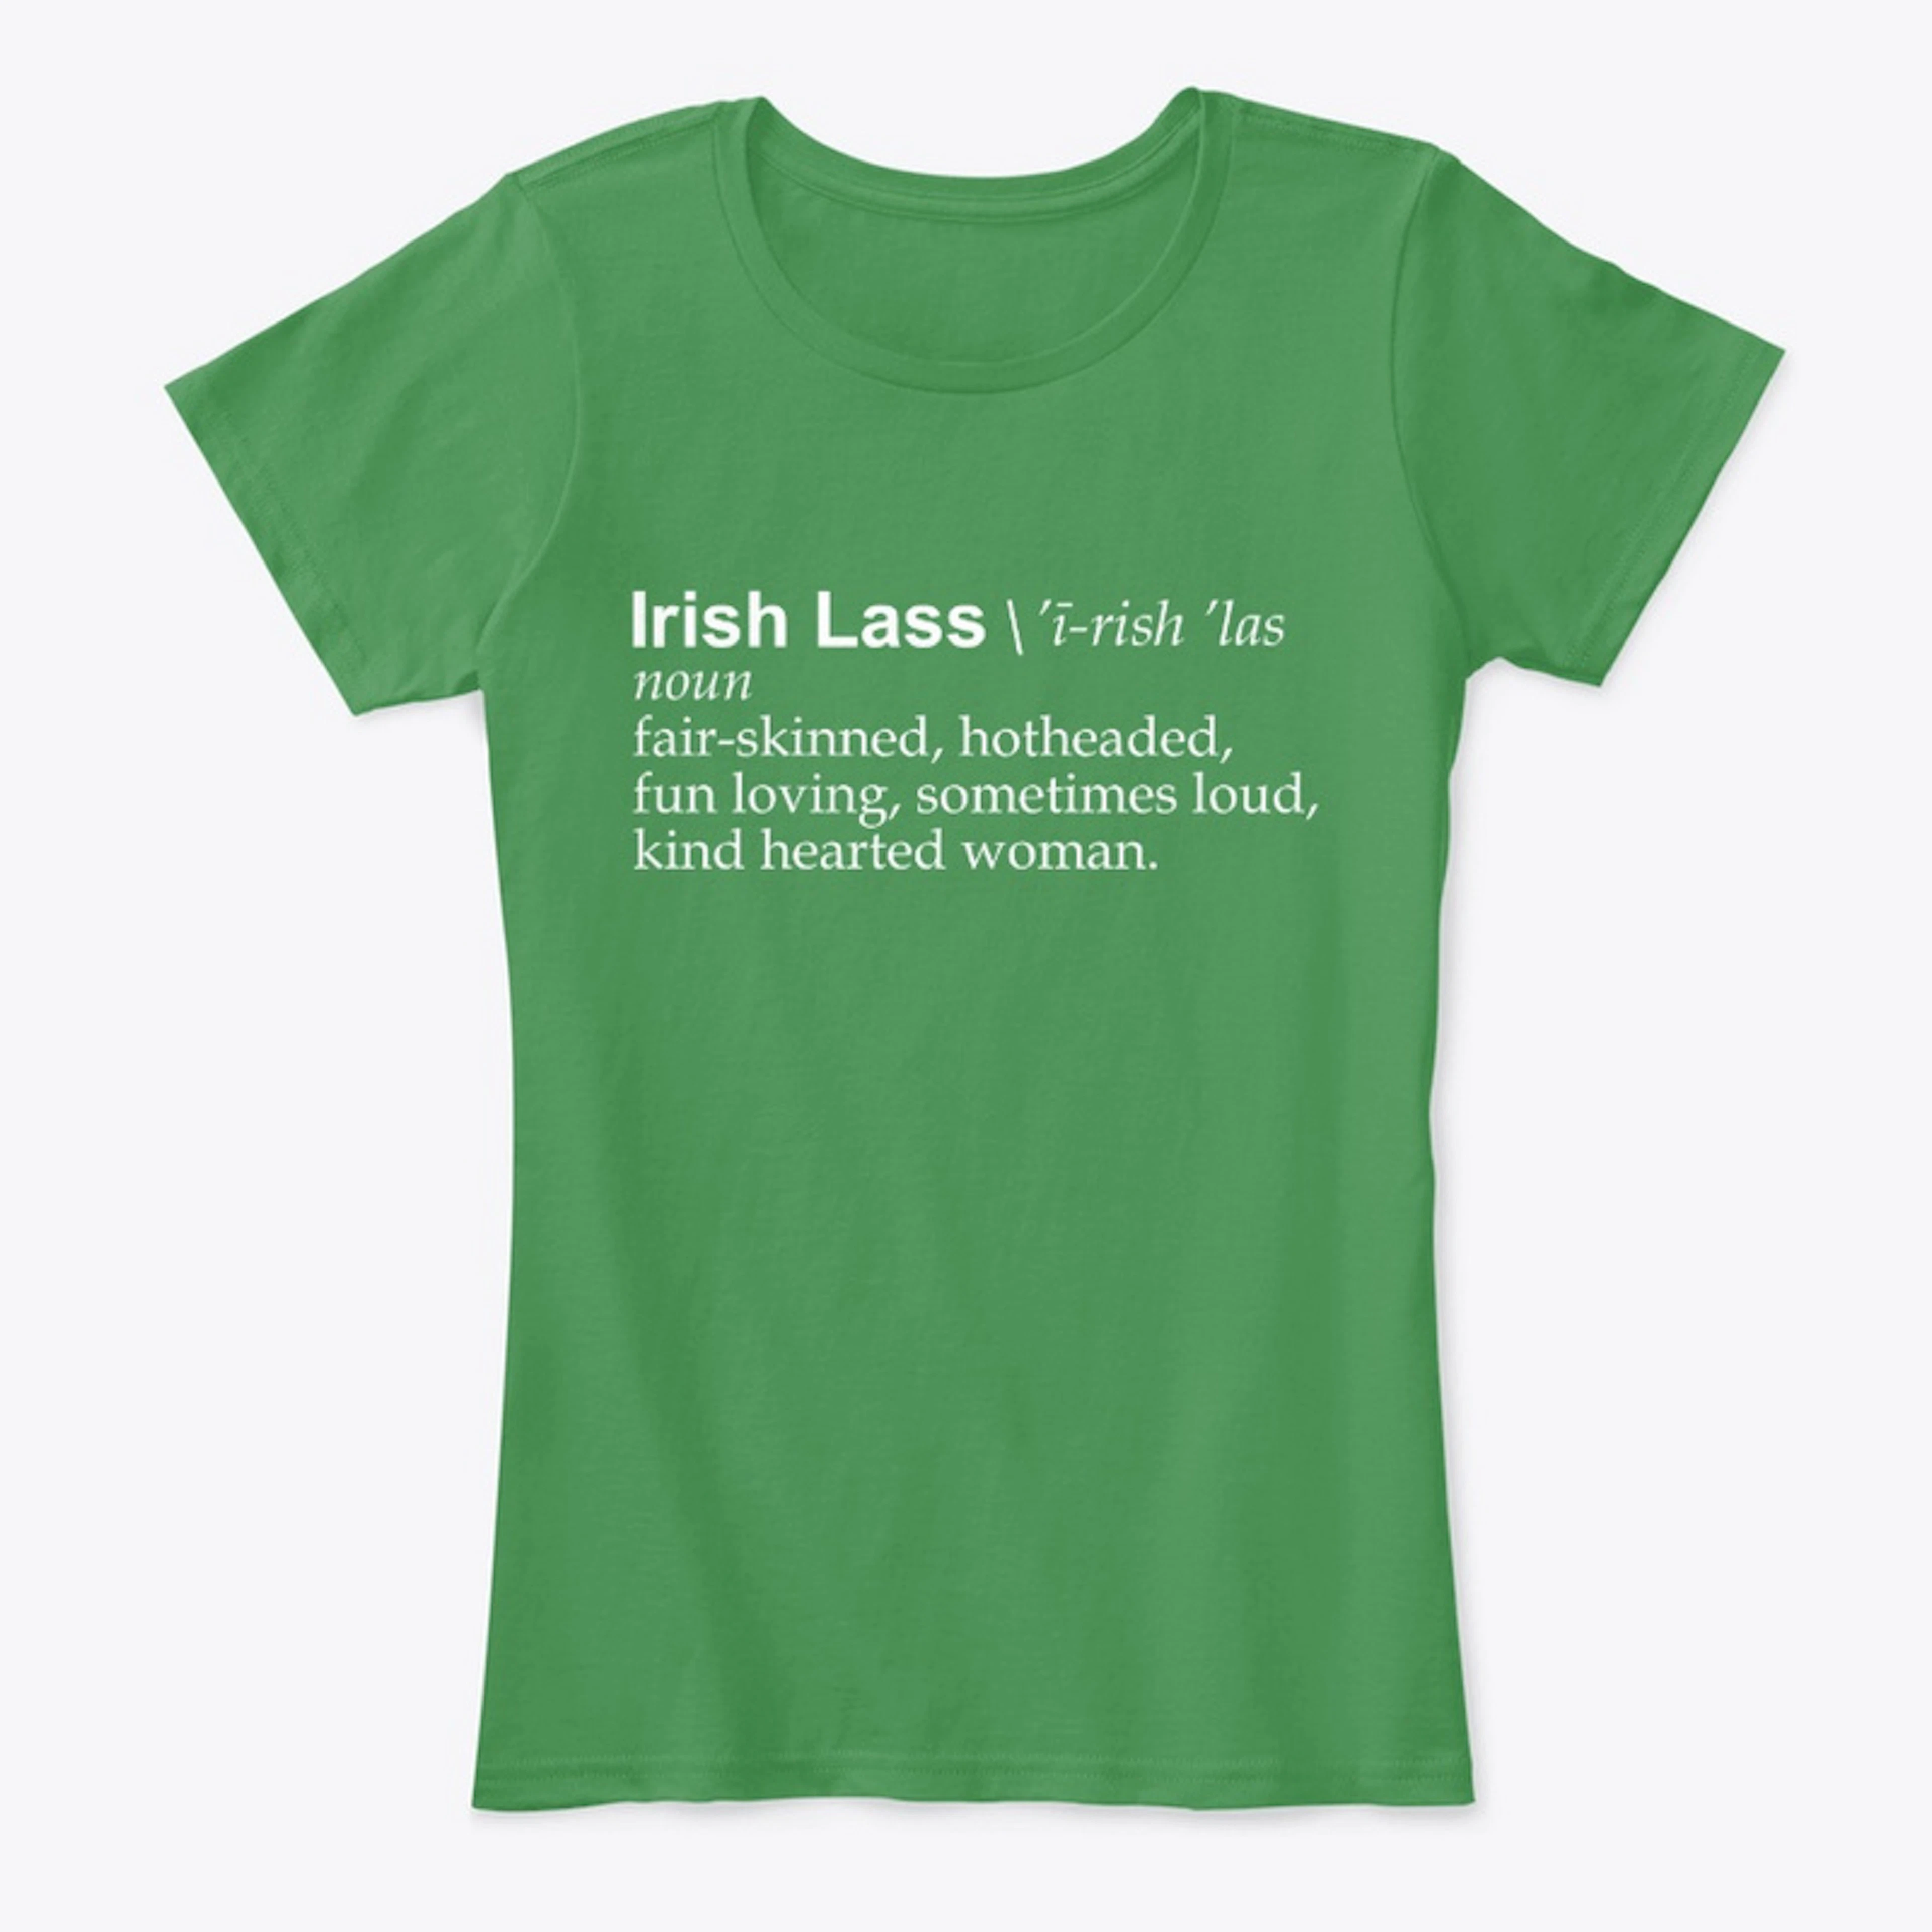 Irish Lass t-shirt